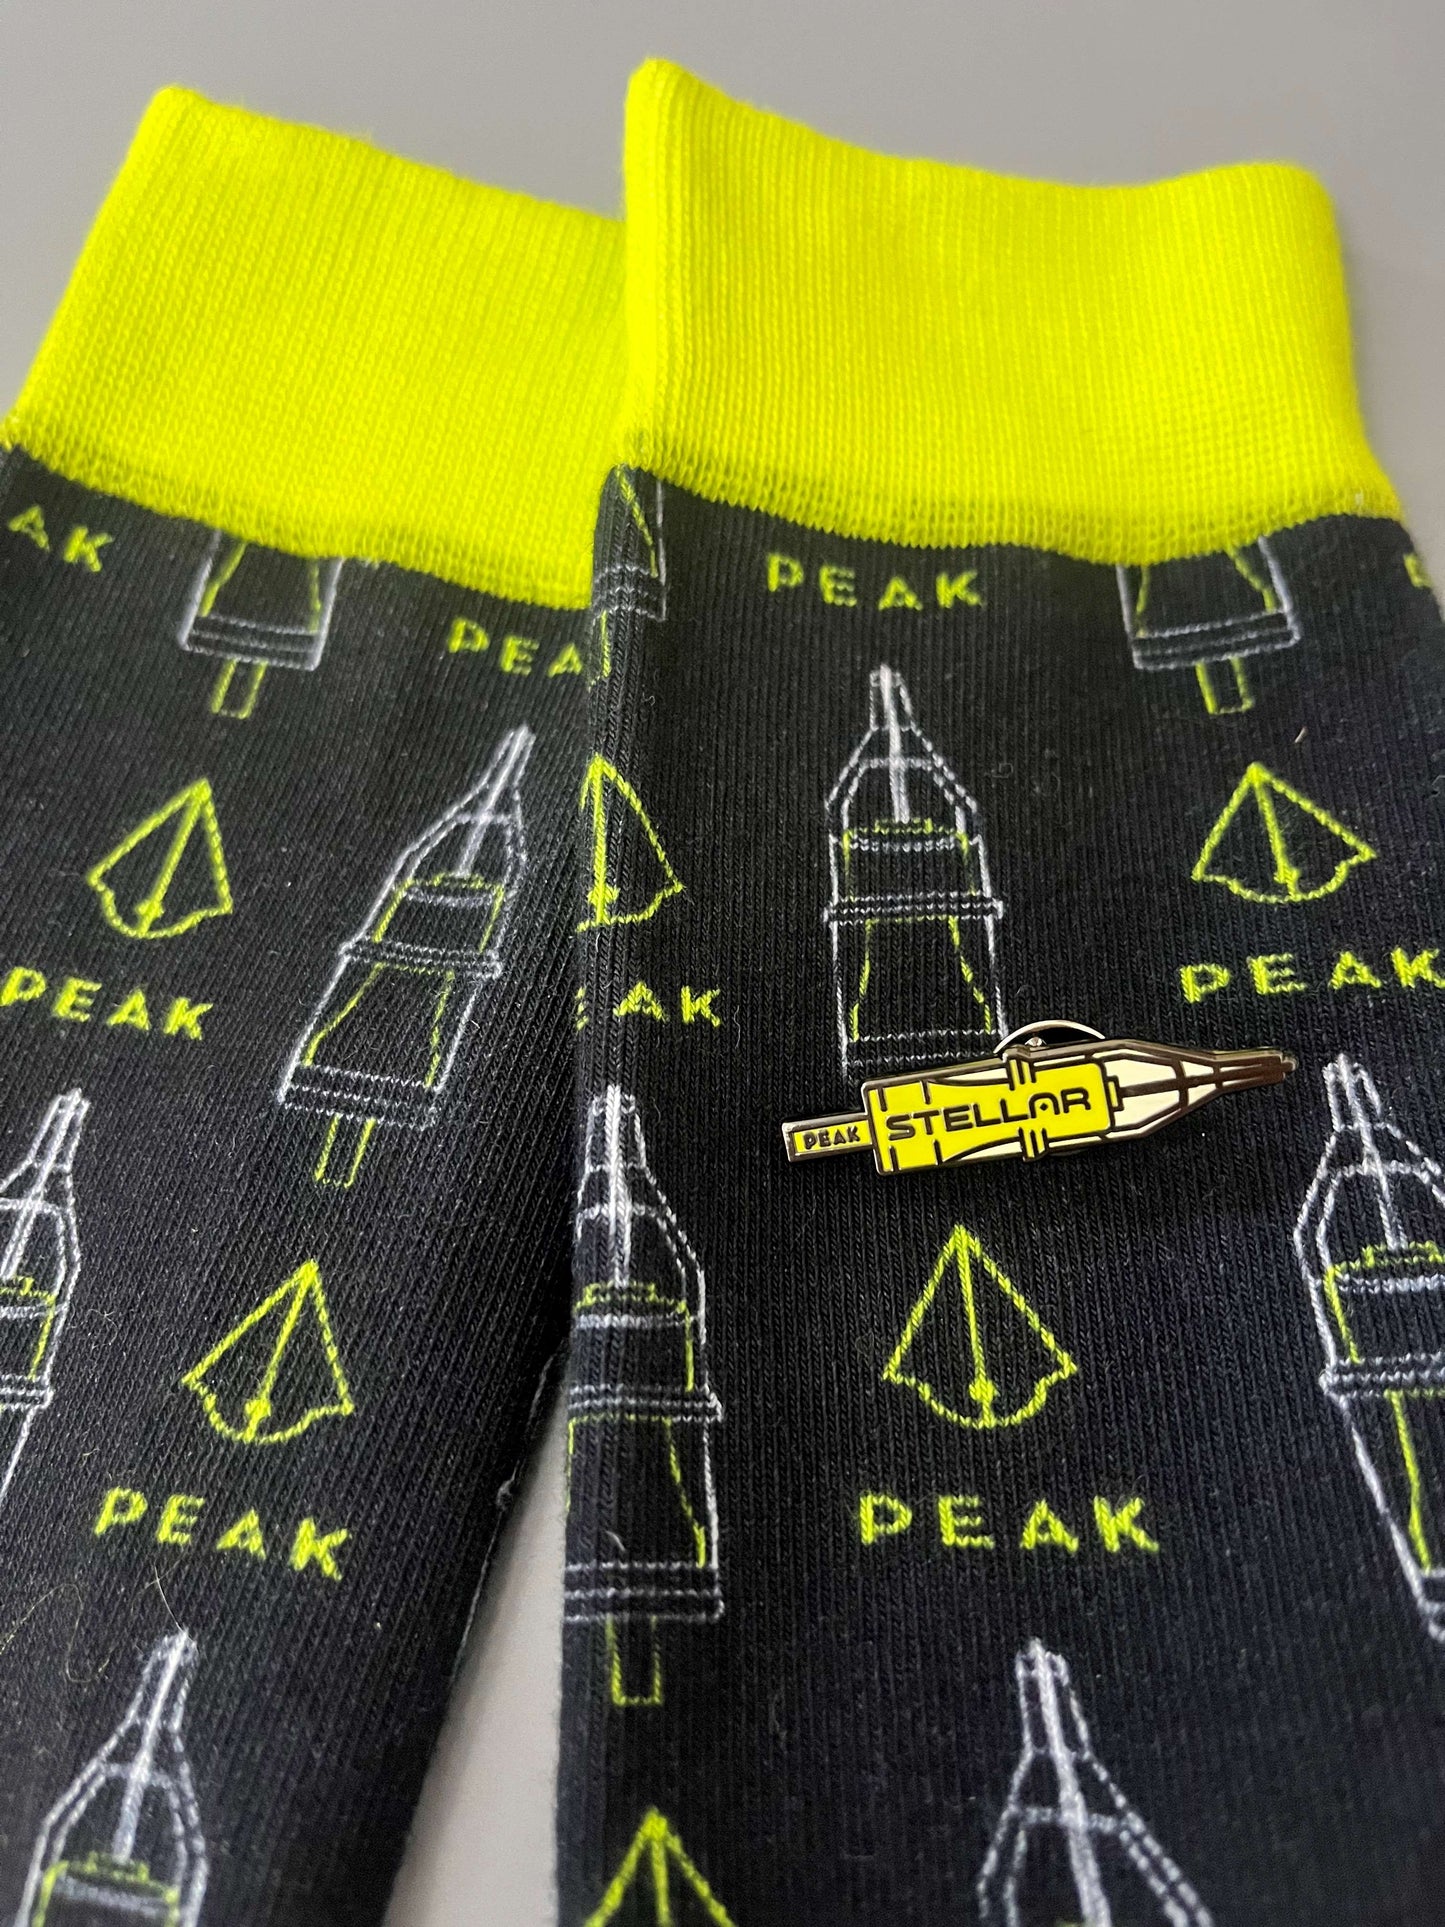 Peak Brand Crew Socks — Price Per Pair